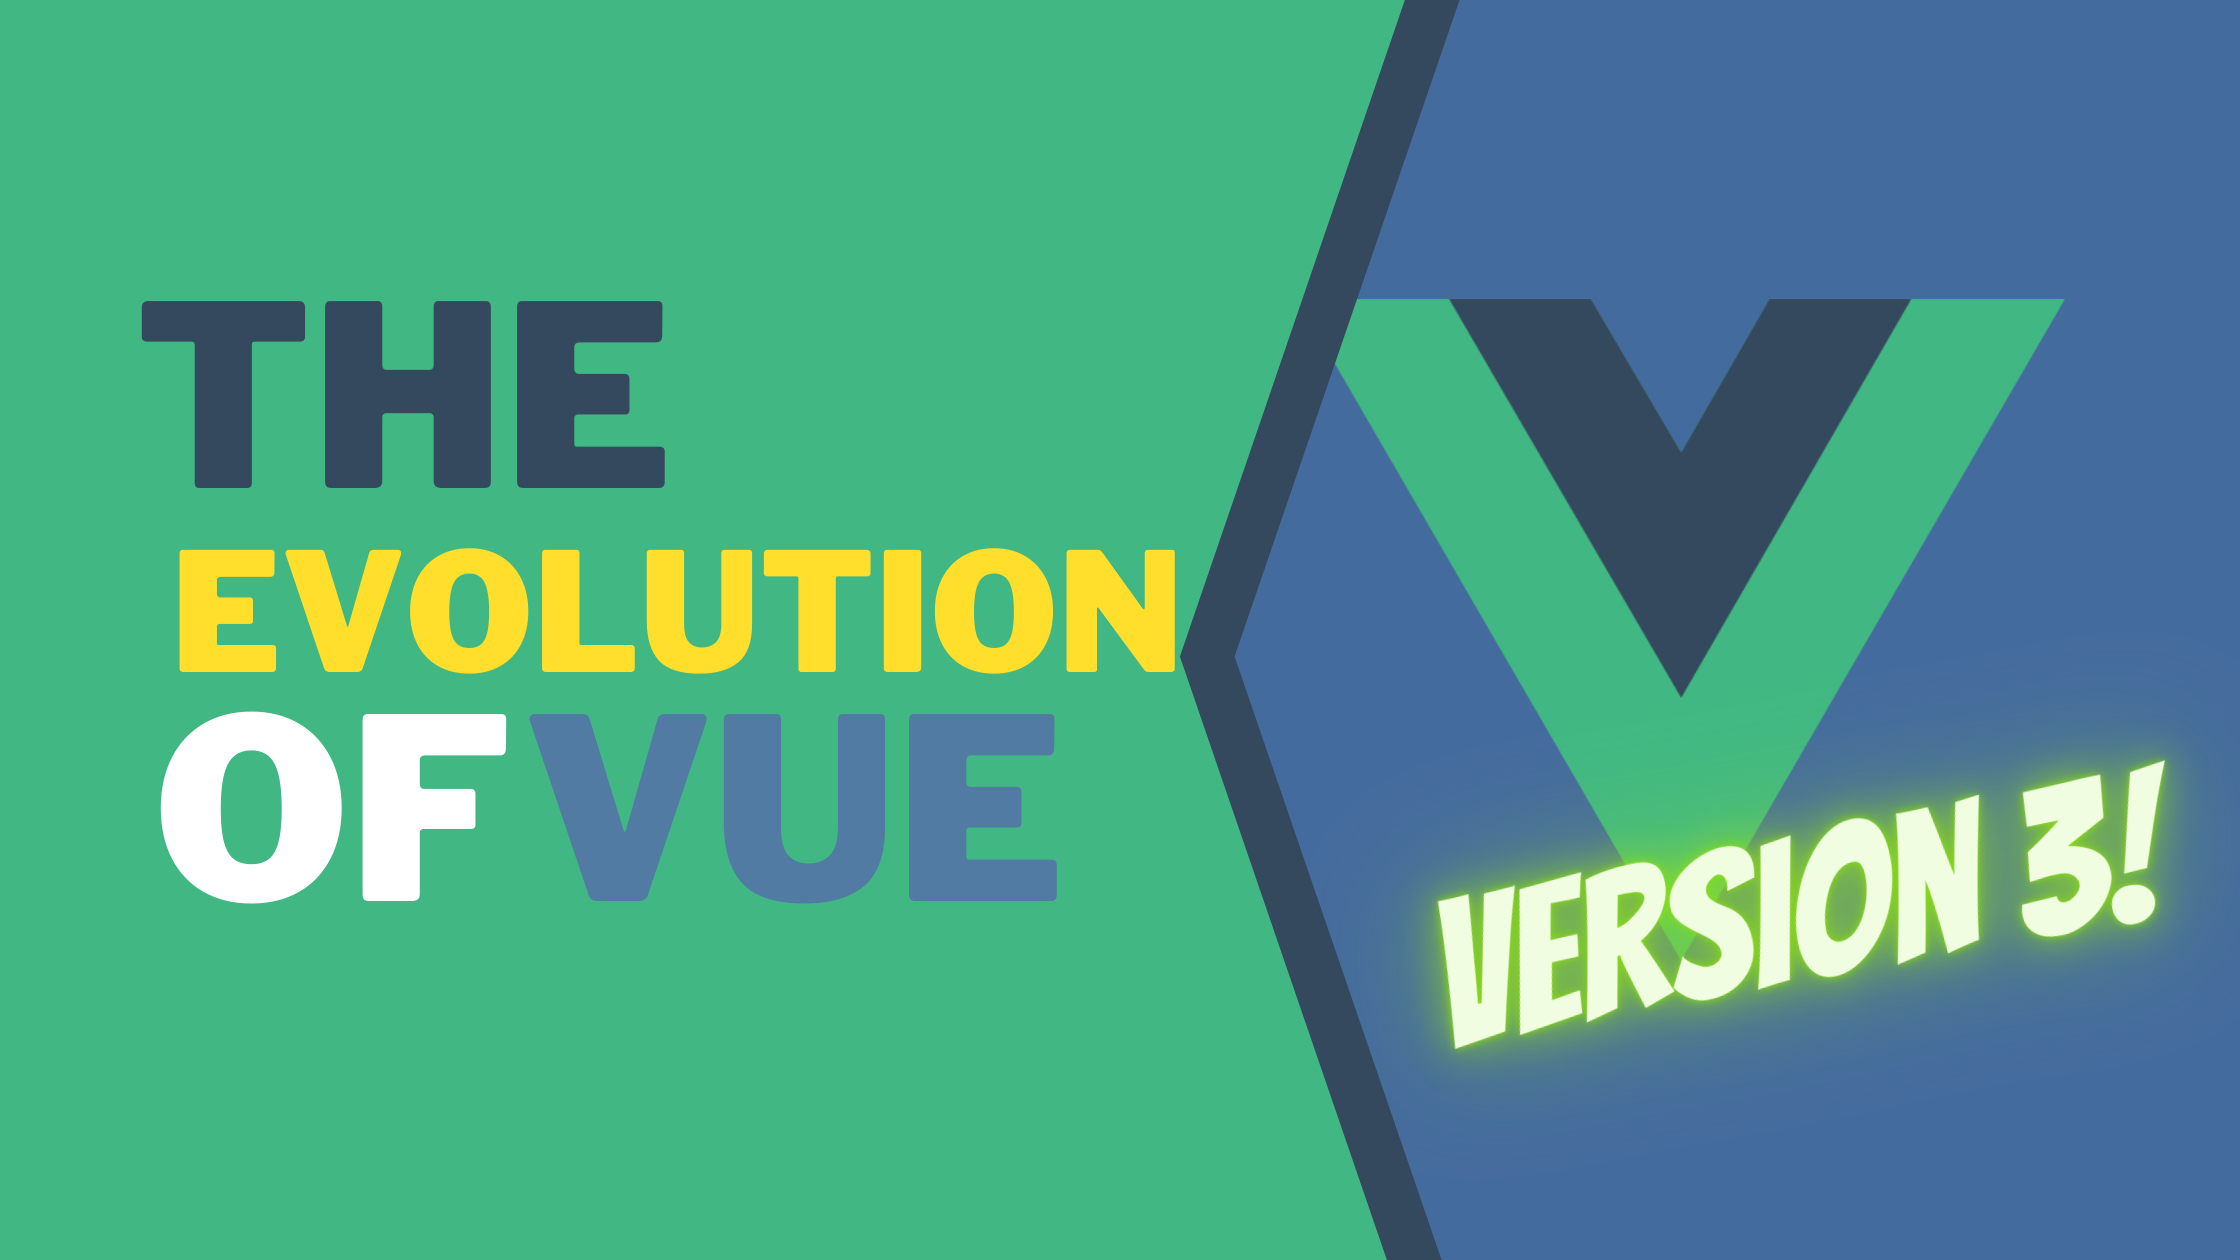 Vue 3 - the Evolution of Vue